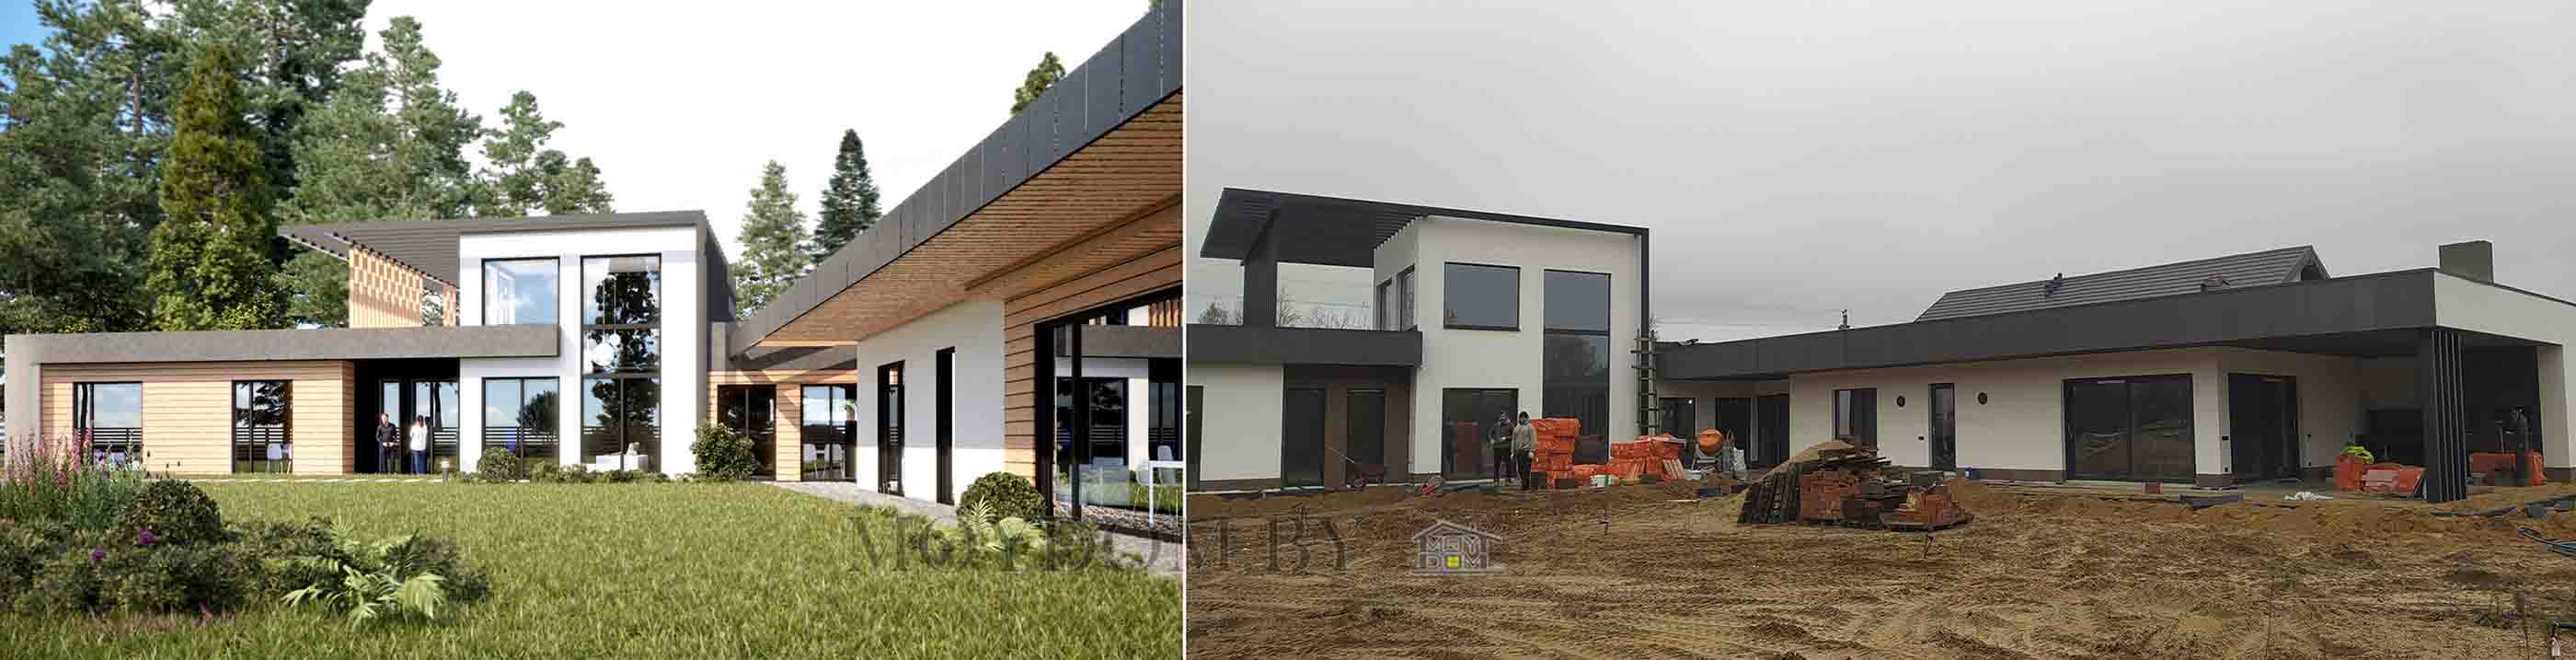 проект и фото построенного одноэтажного хайтек дома